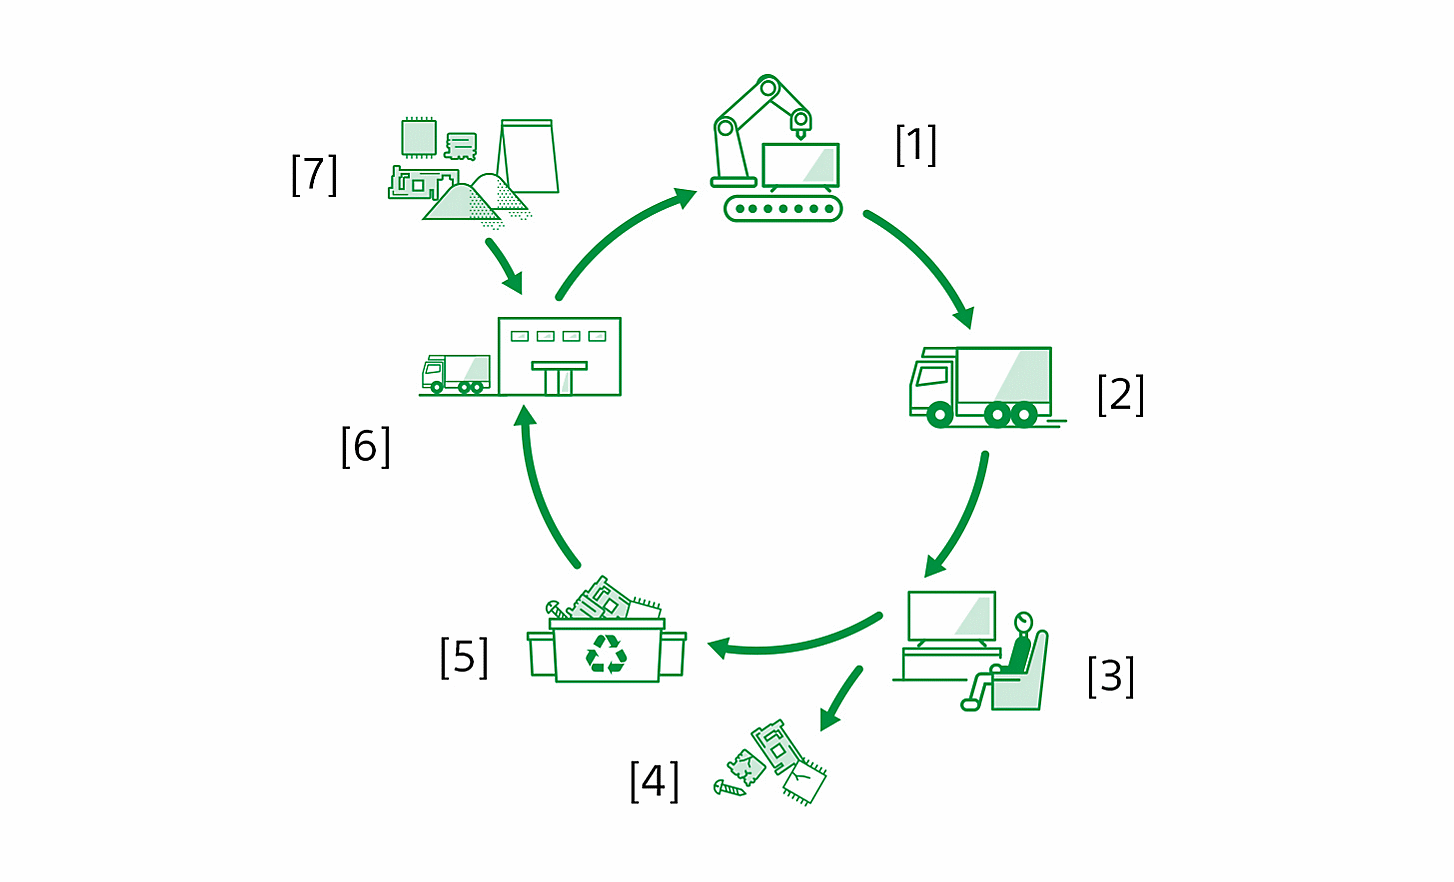 رسم تخطيطي يُظهر دورة حياة المنتج من التصنيع إلى مادة إعادة التدوير، مع الملصقات: [1] تصنيع المنتجات في مواقع المصنع [2] اللوجستيات [3] استخدام المنتجات بواسطة العملاء [4] استخراج الموارد والتخلص منها [5] مواقع إعادة التدوير [6] تصنيع القطع بواسطة الموردين [7] استخراج الموارد